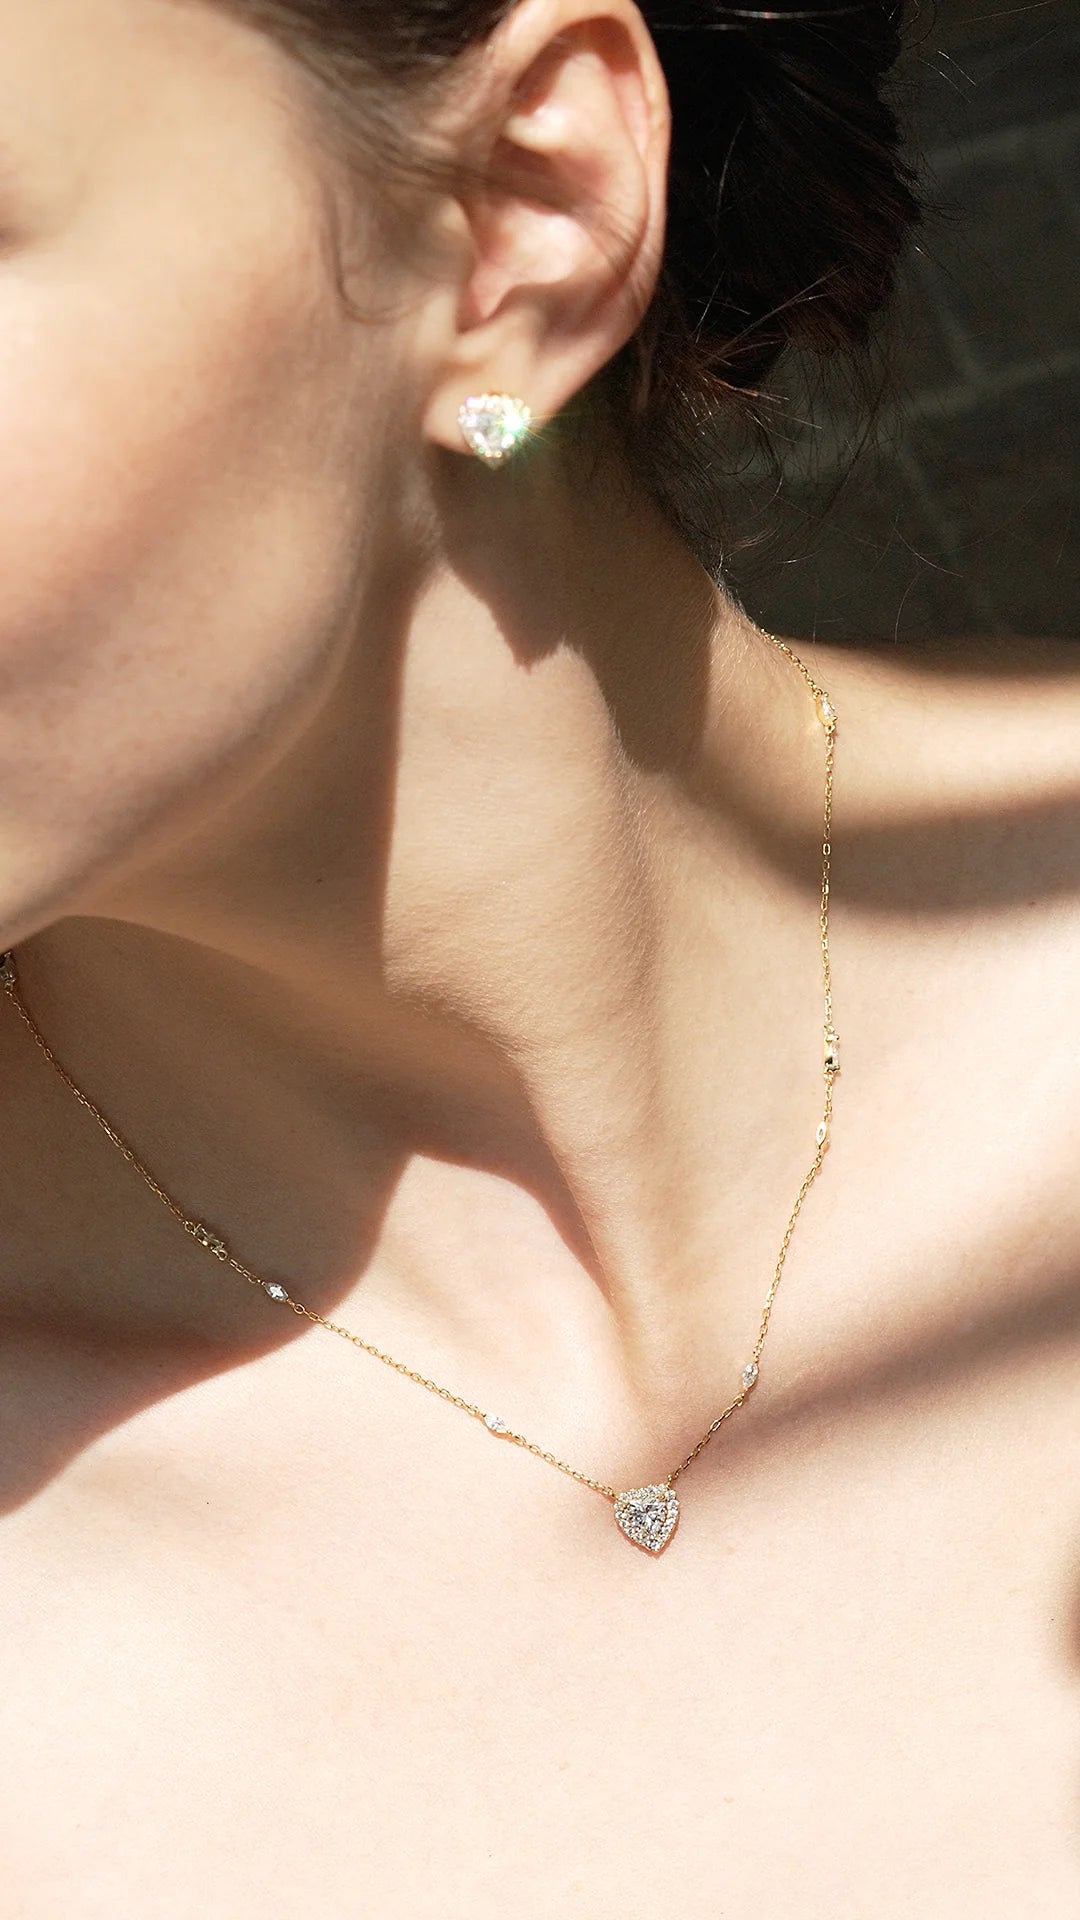 Heart Cut Necklace & Earrings set